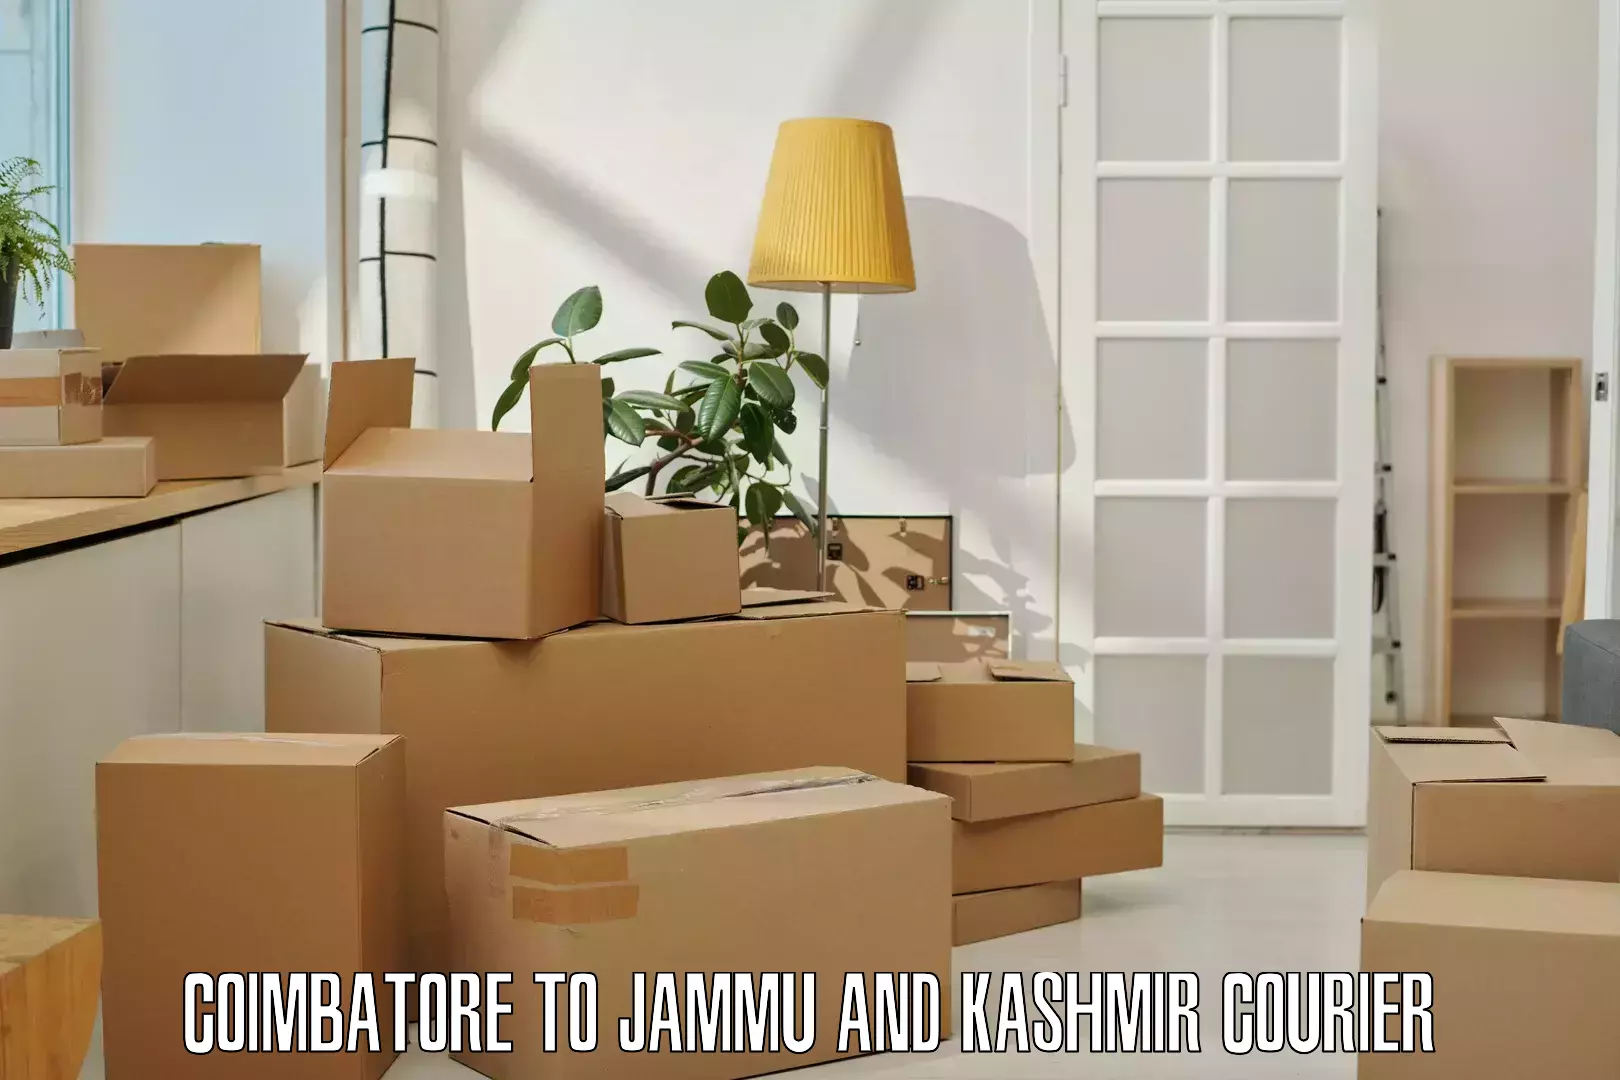 Express logistics service Coimbatore to Jammu and Kashmir